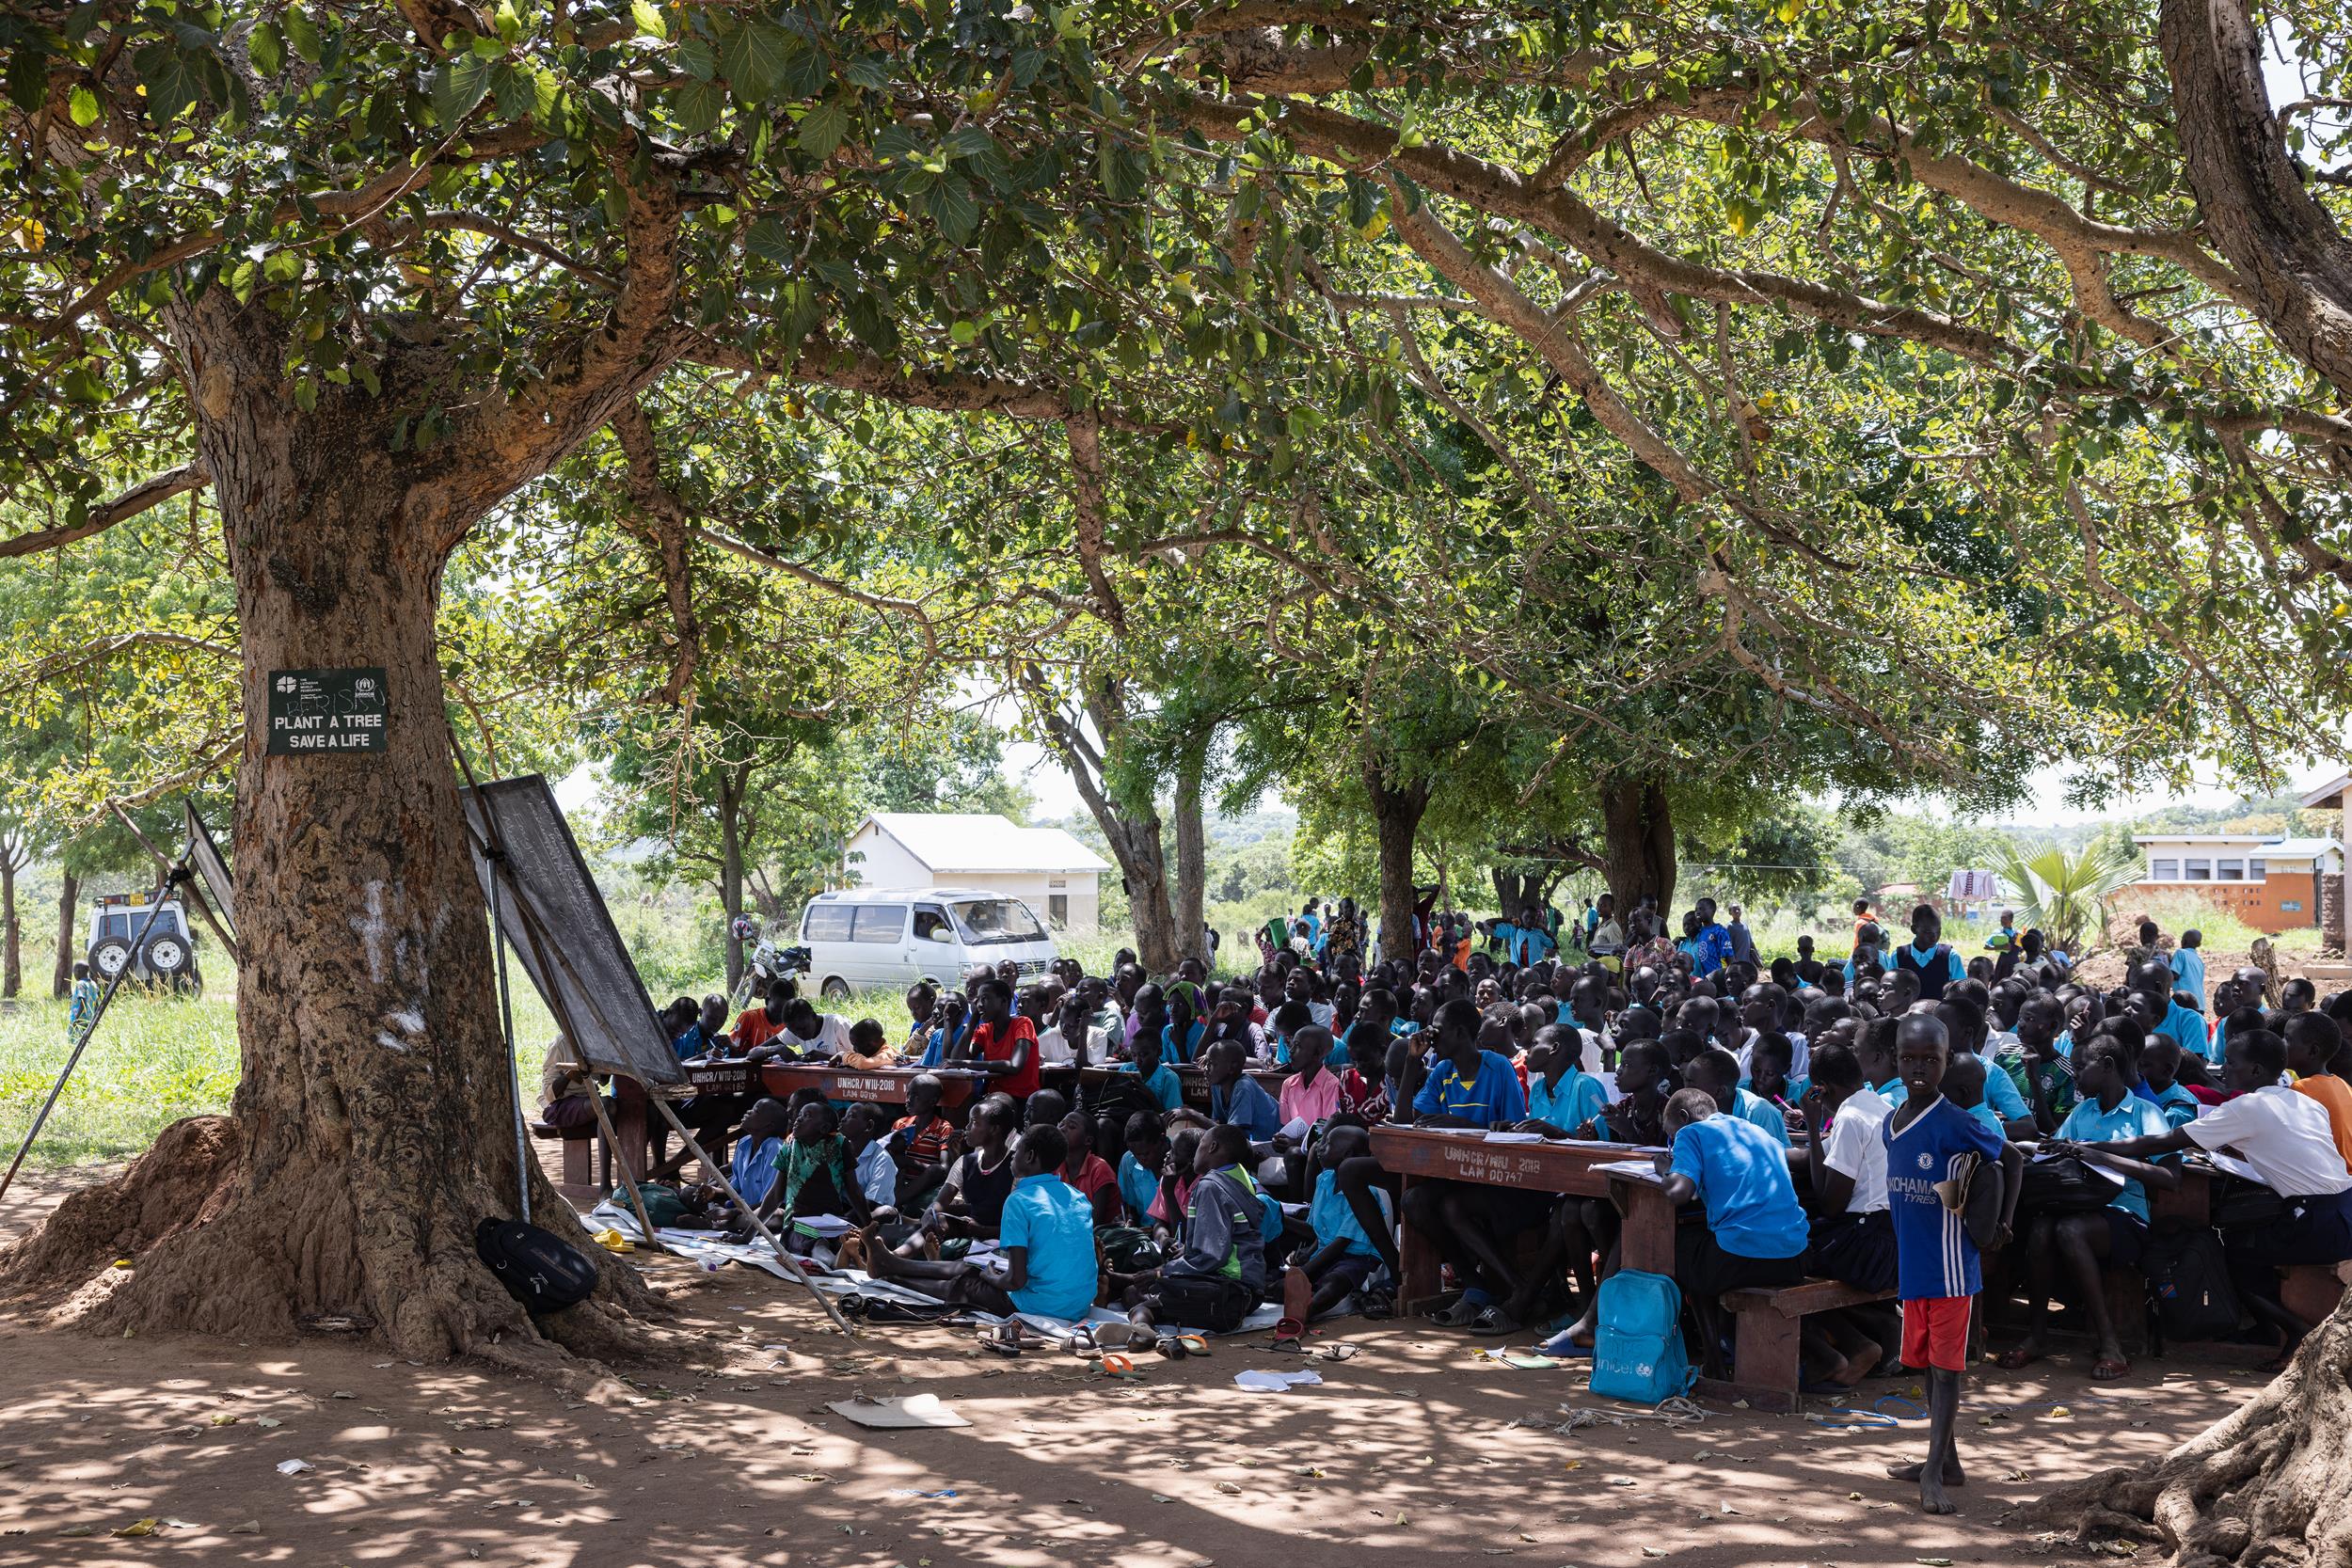 A school in Africa, in a refugee camp in Uganda